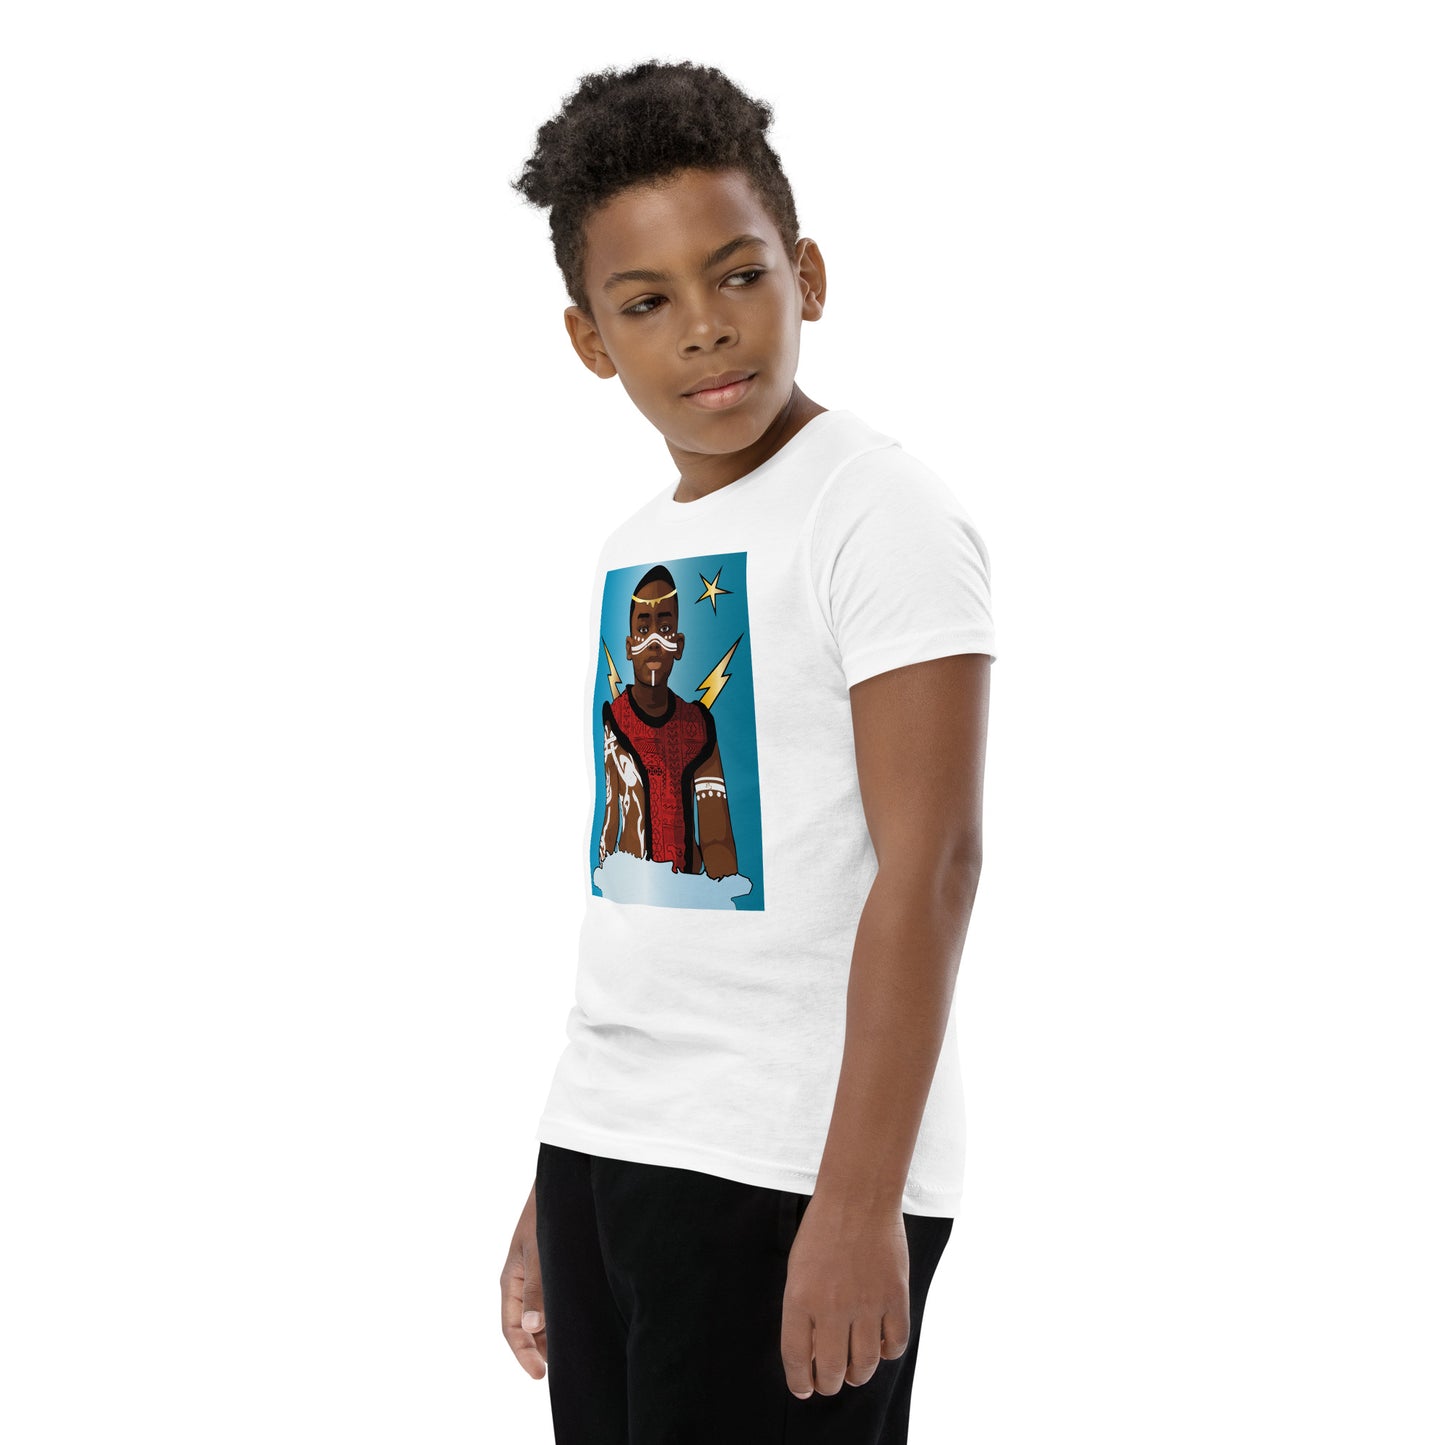 AfriBix Prince Youth Short Sleeve T-Shirt